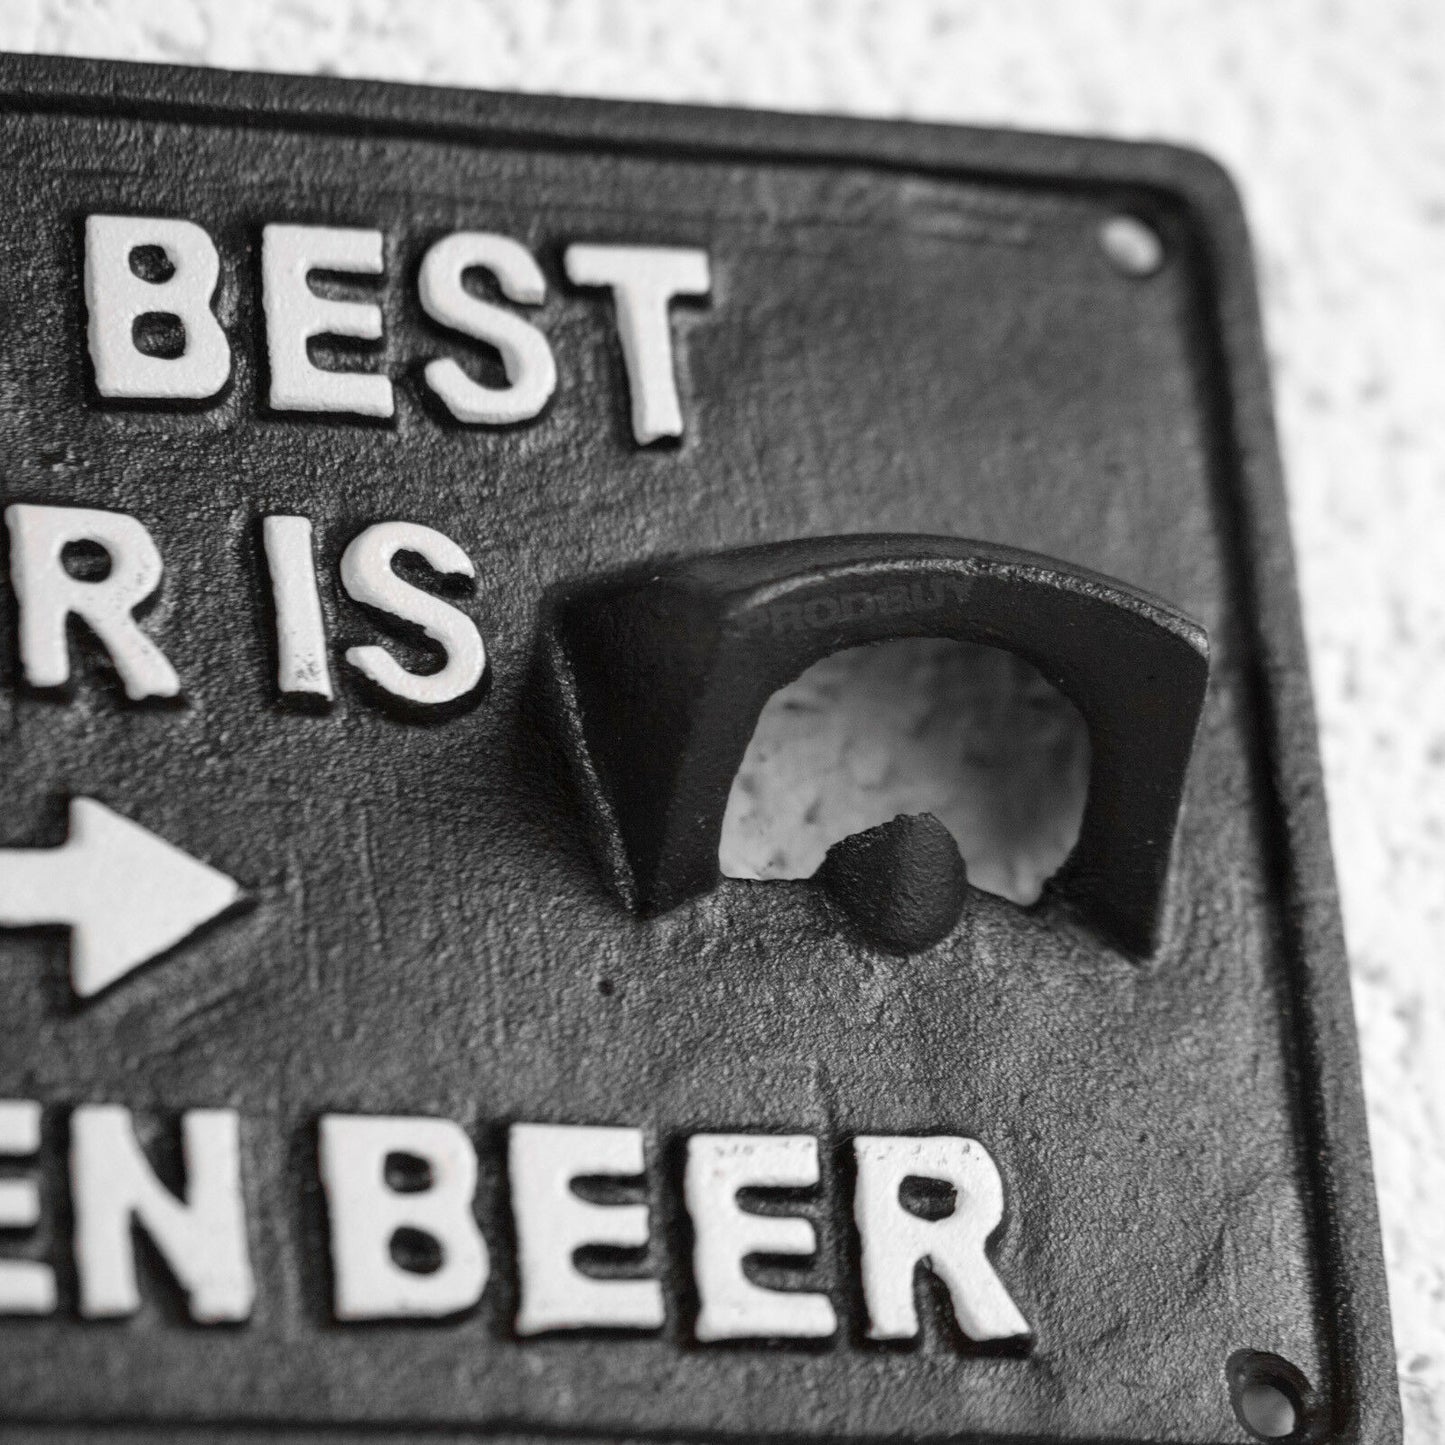 'The Best Beer Is An Open Beer' Wall Bottle Opener